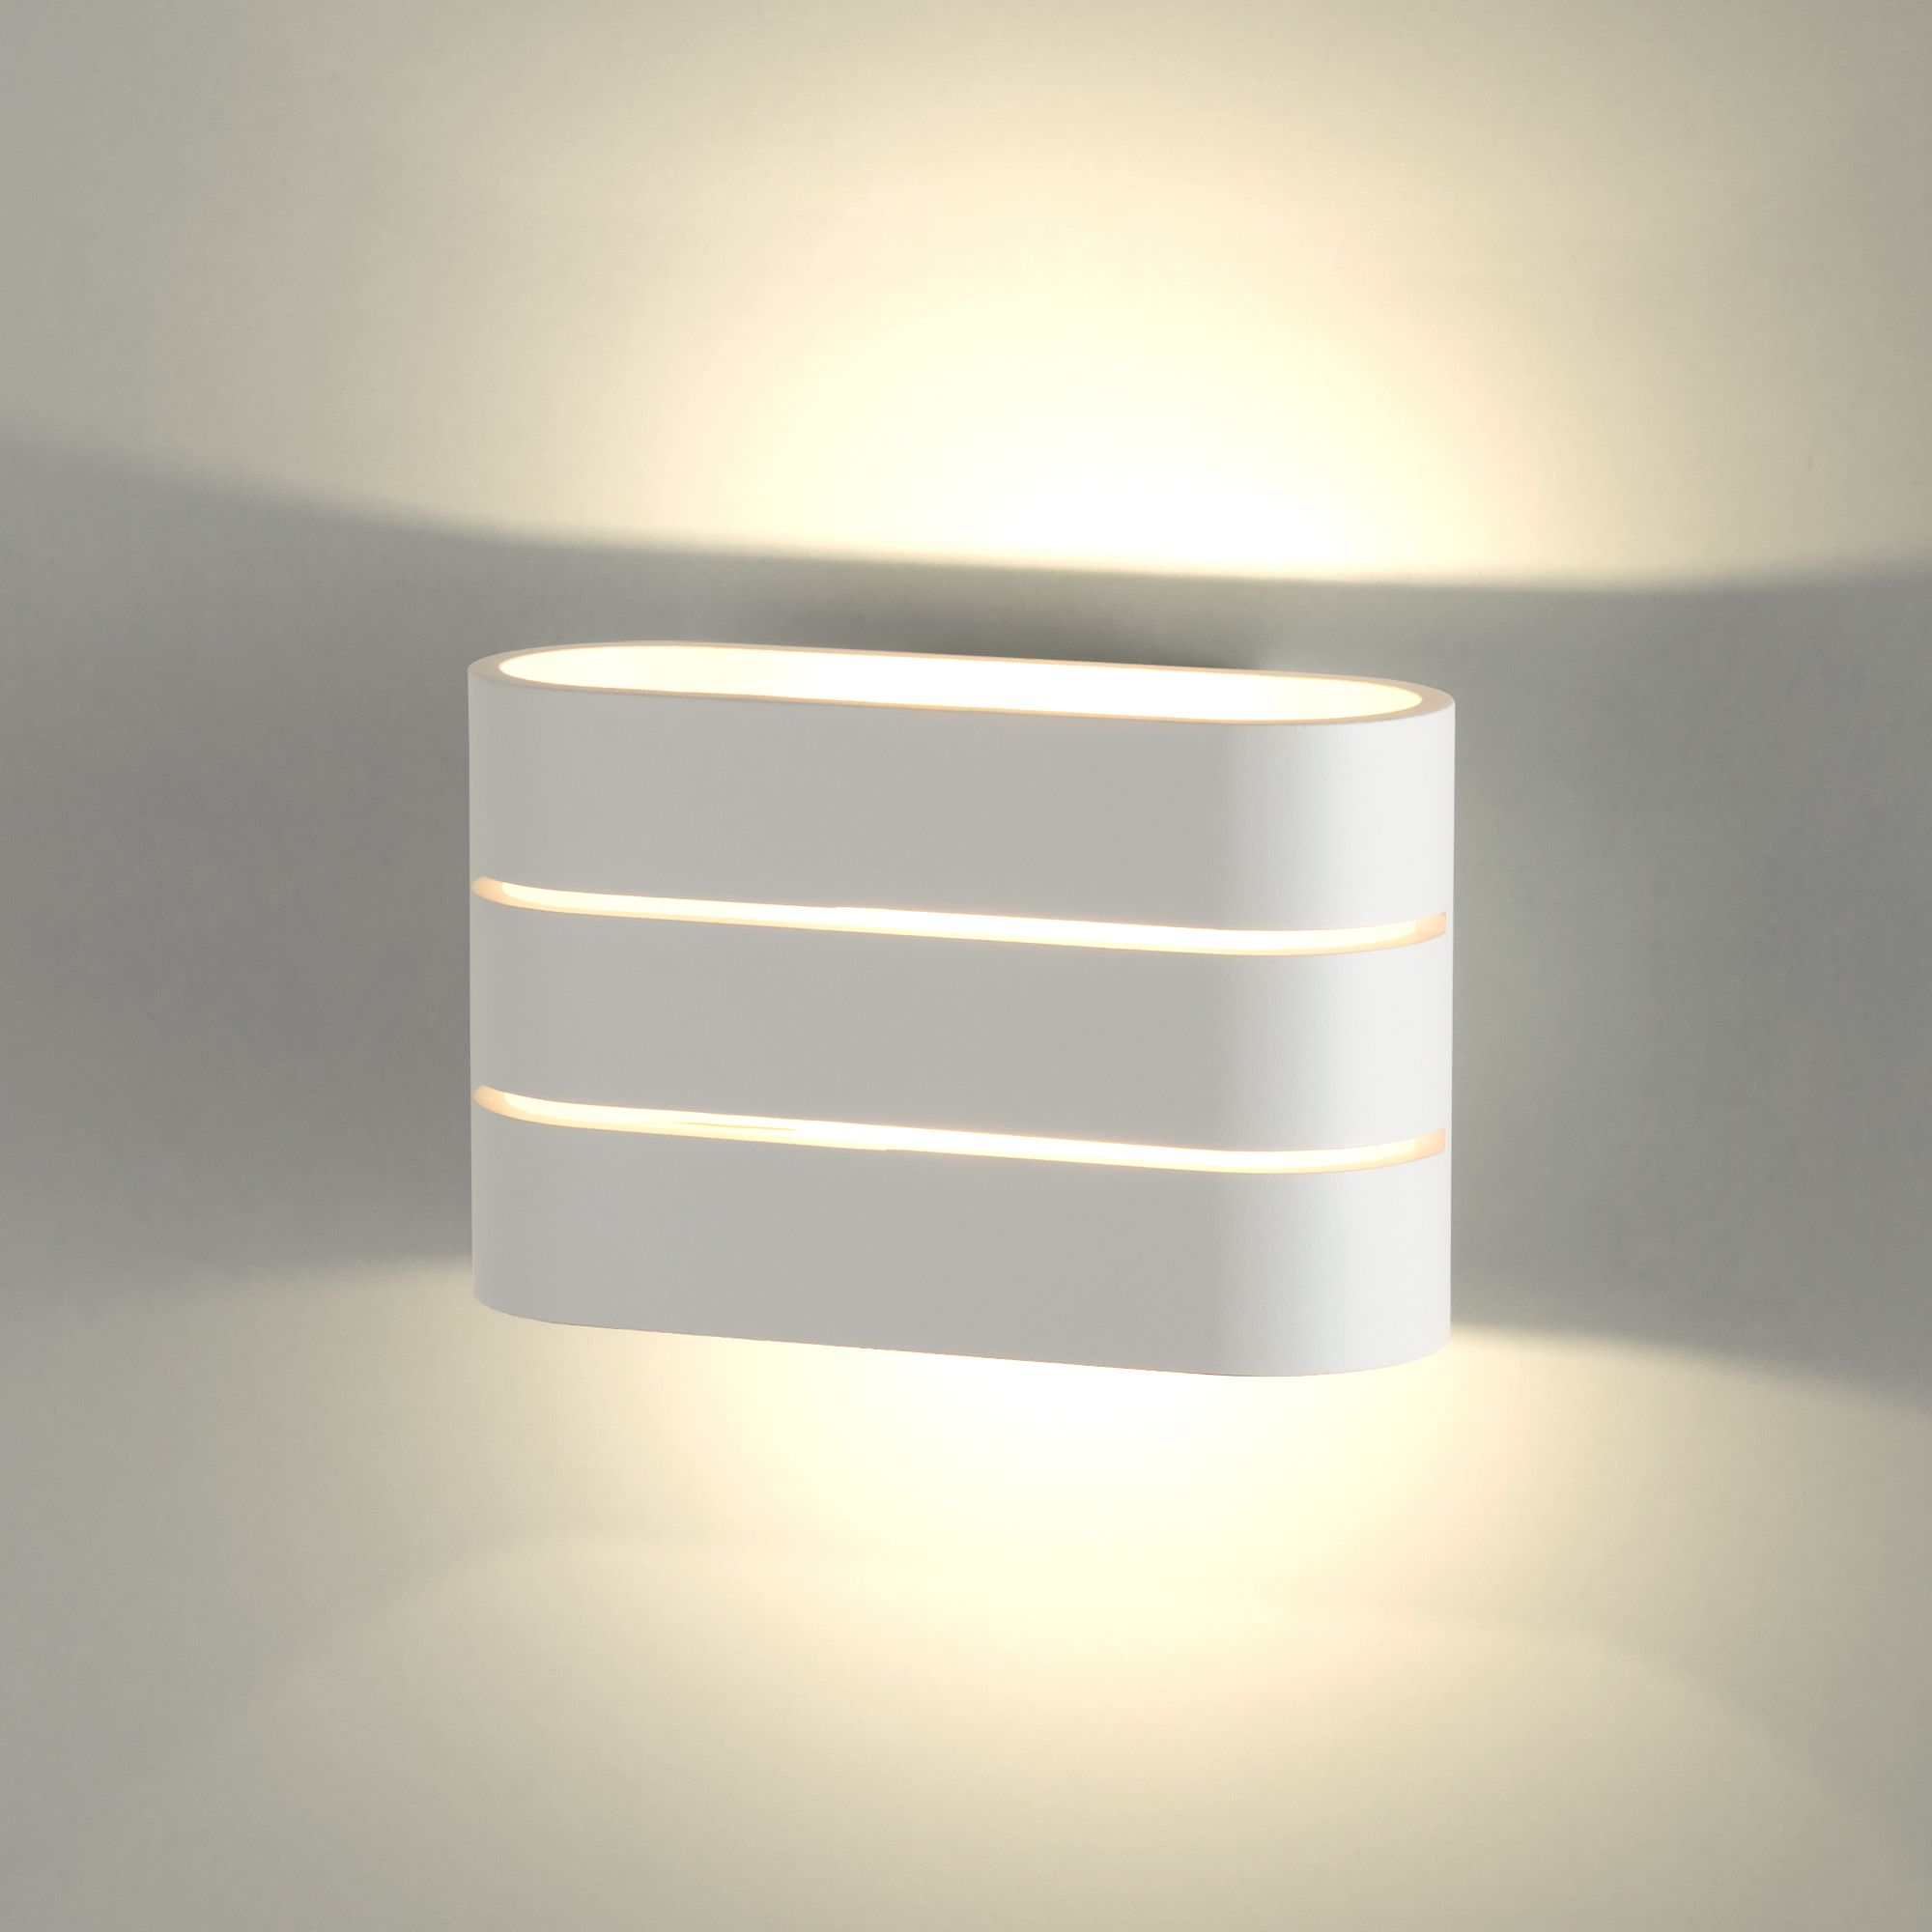 Настенный светодиодный светильник Light Line MRL LED 1248 белый